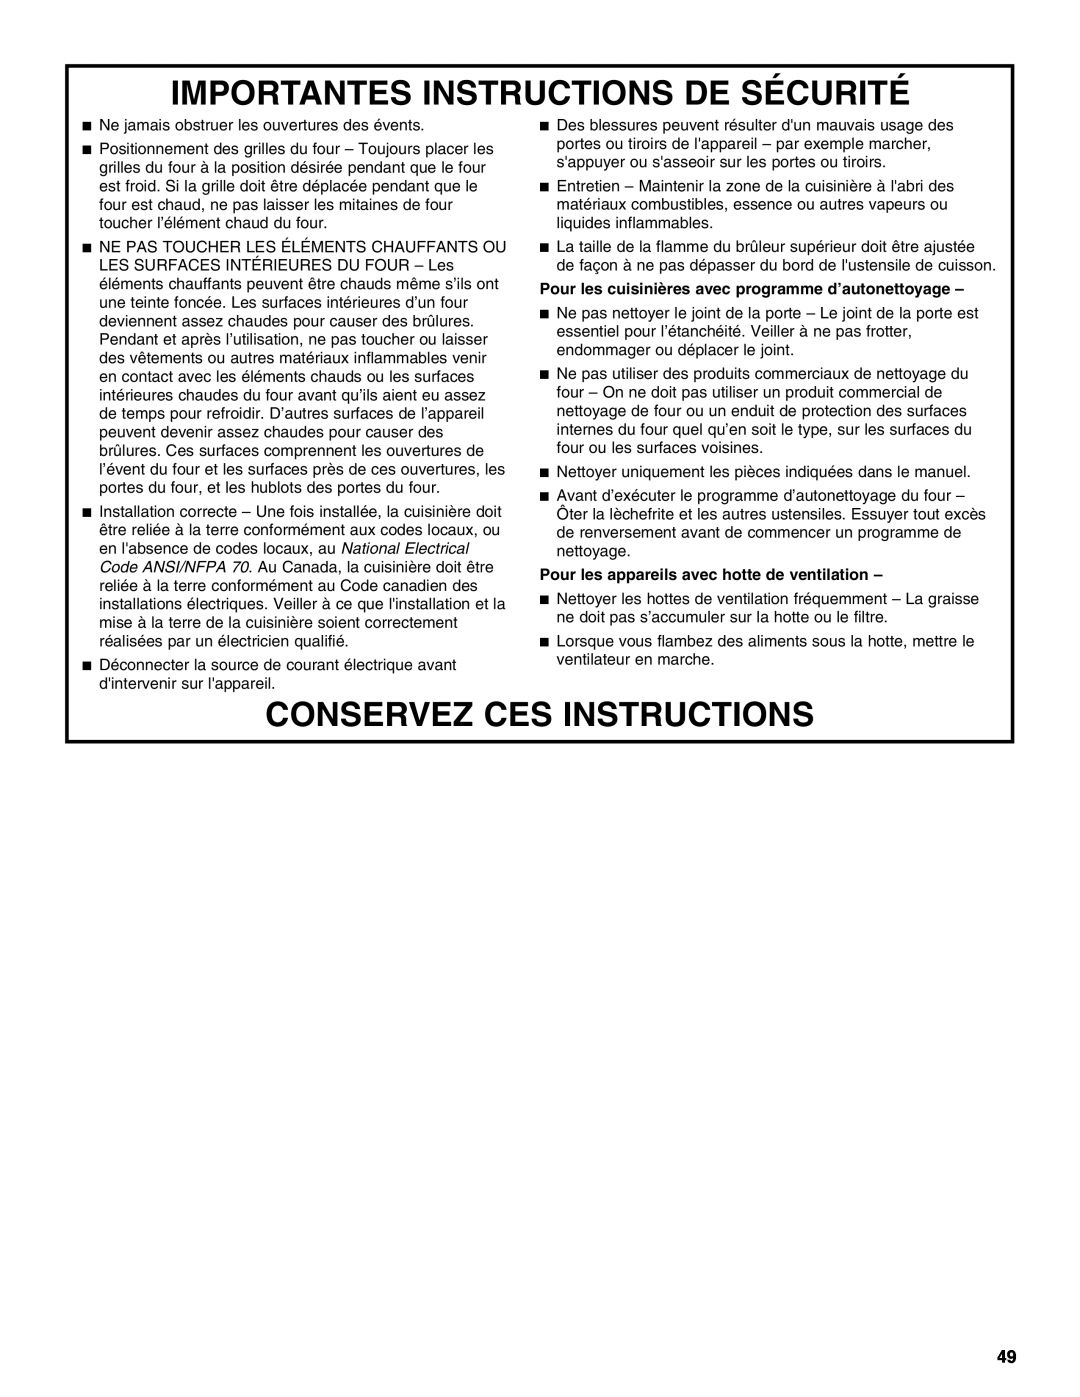 KitchenAid KDRU763.KDRU manual Importantes Instructions De Sécurité, Conservez Ces Instructions 